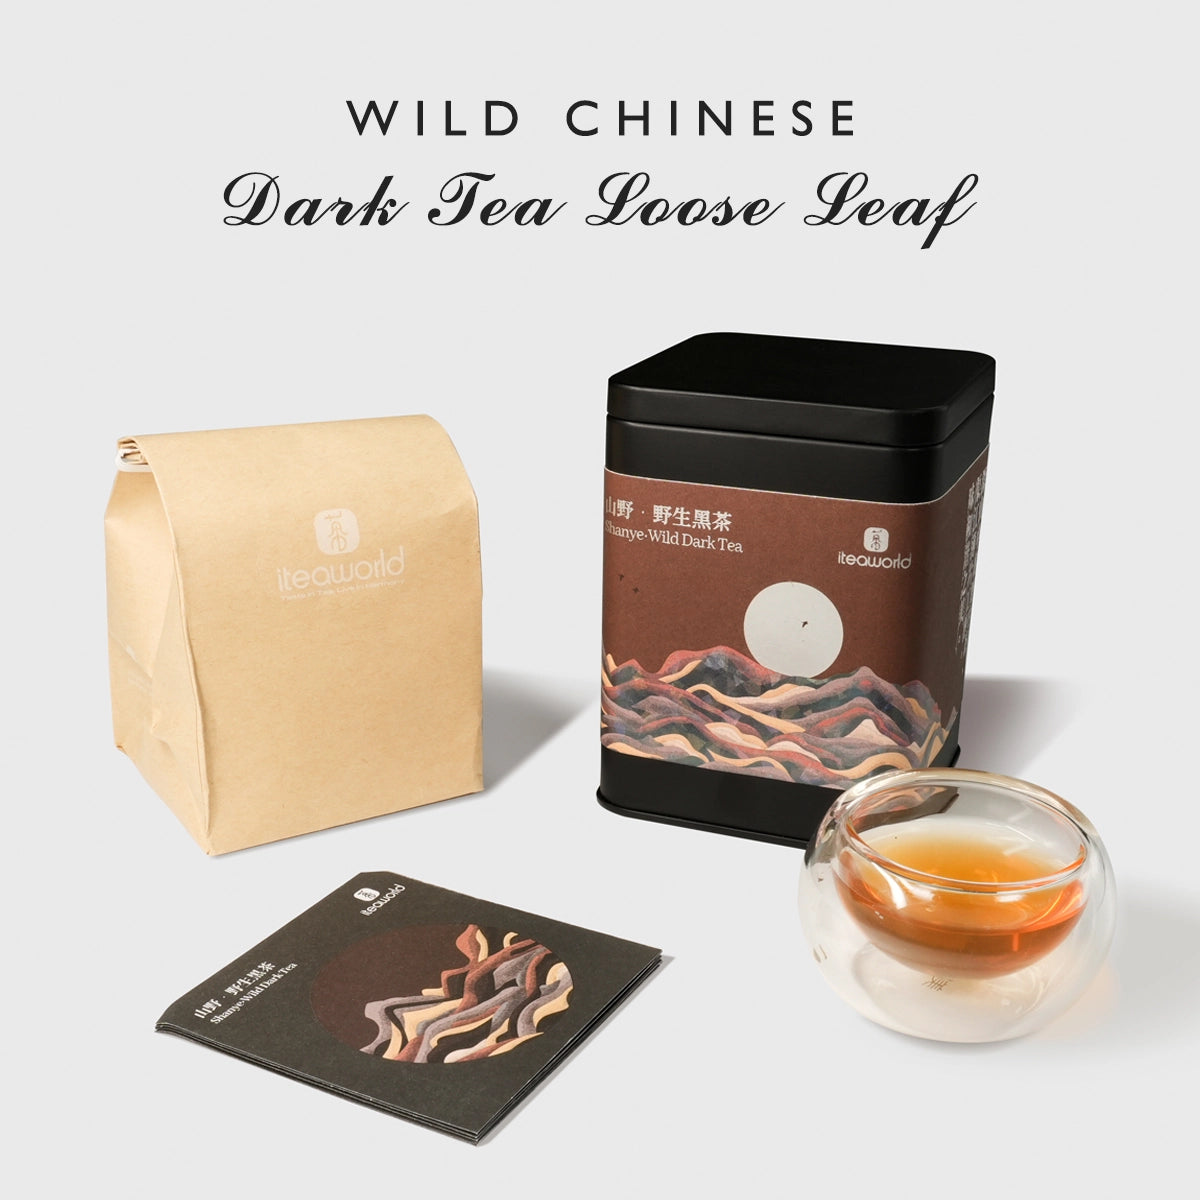 Chinese Wild Dark Tea